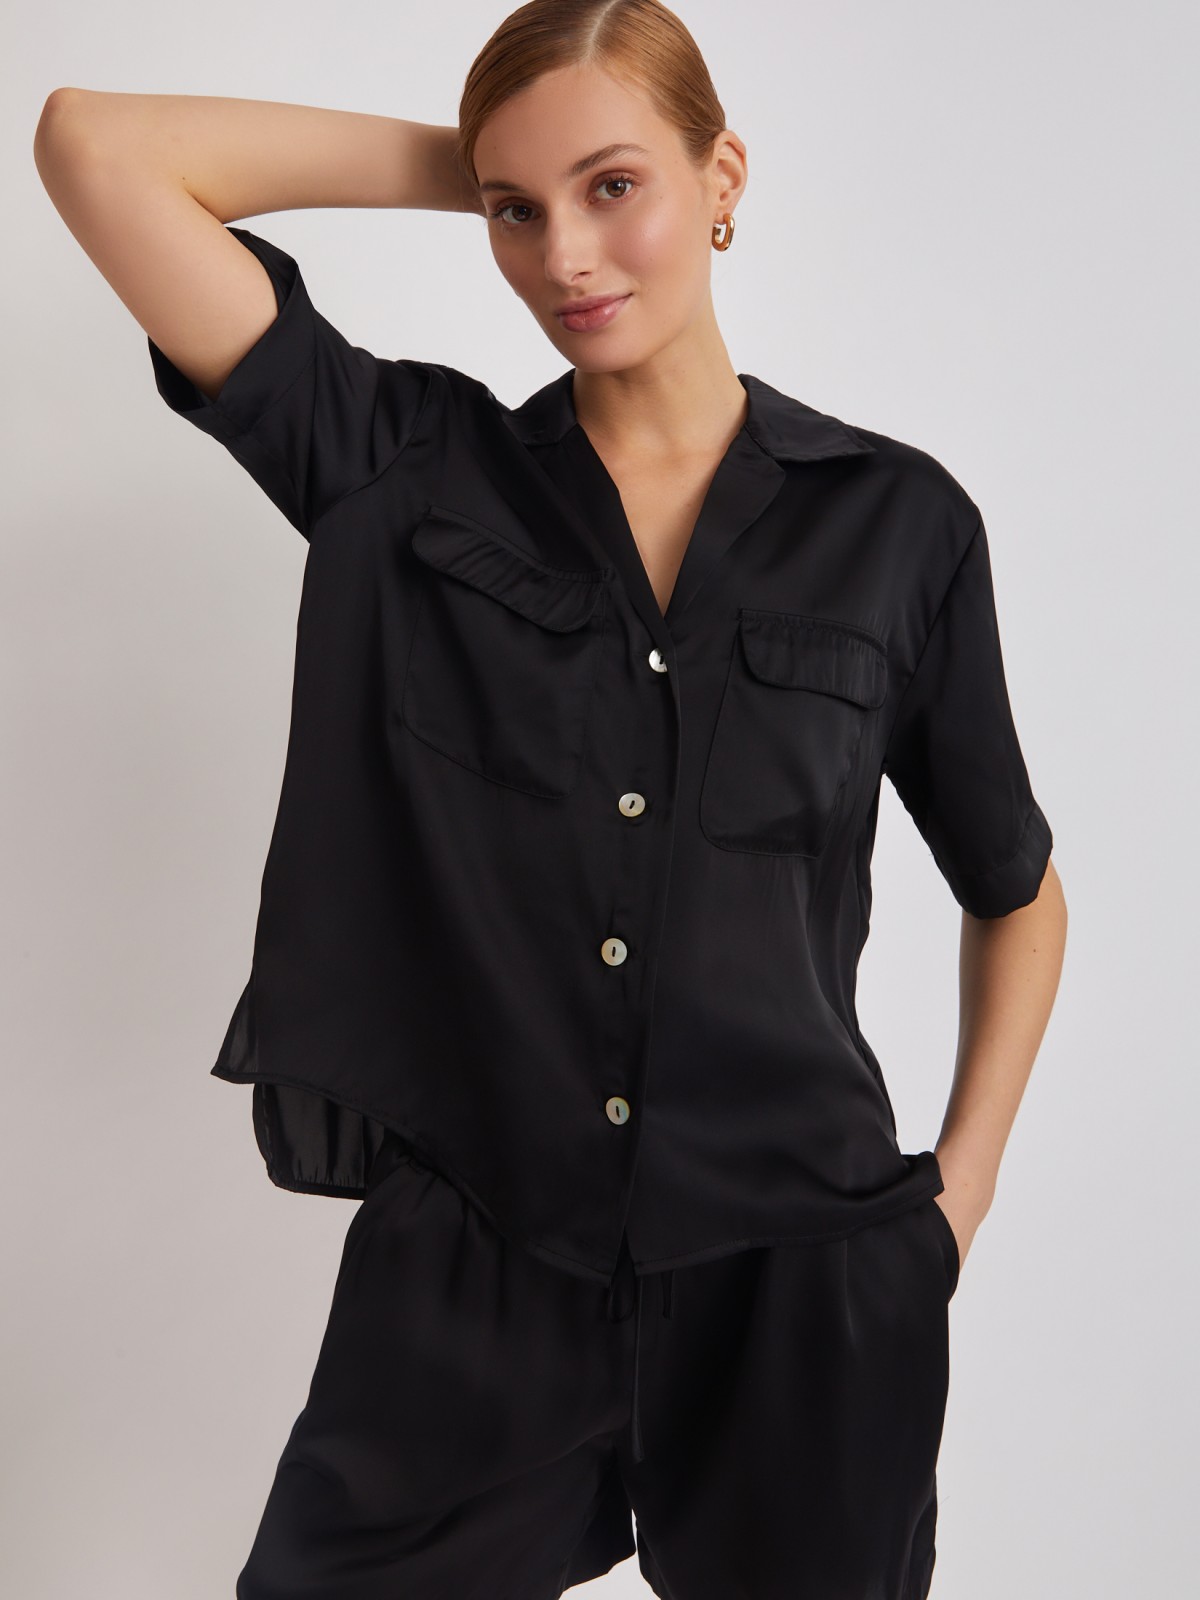 Блузка с короткими рукавами zolla 22325127Y061, цвет черный, размер XS - фото 5